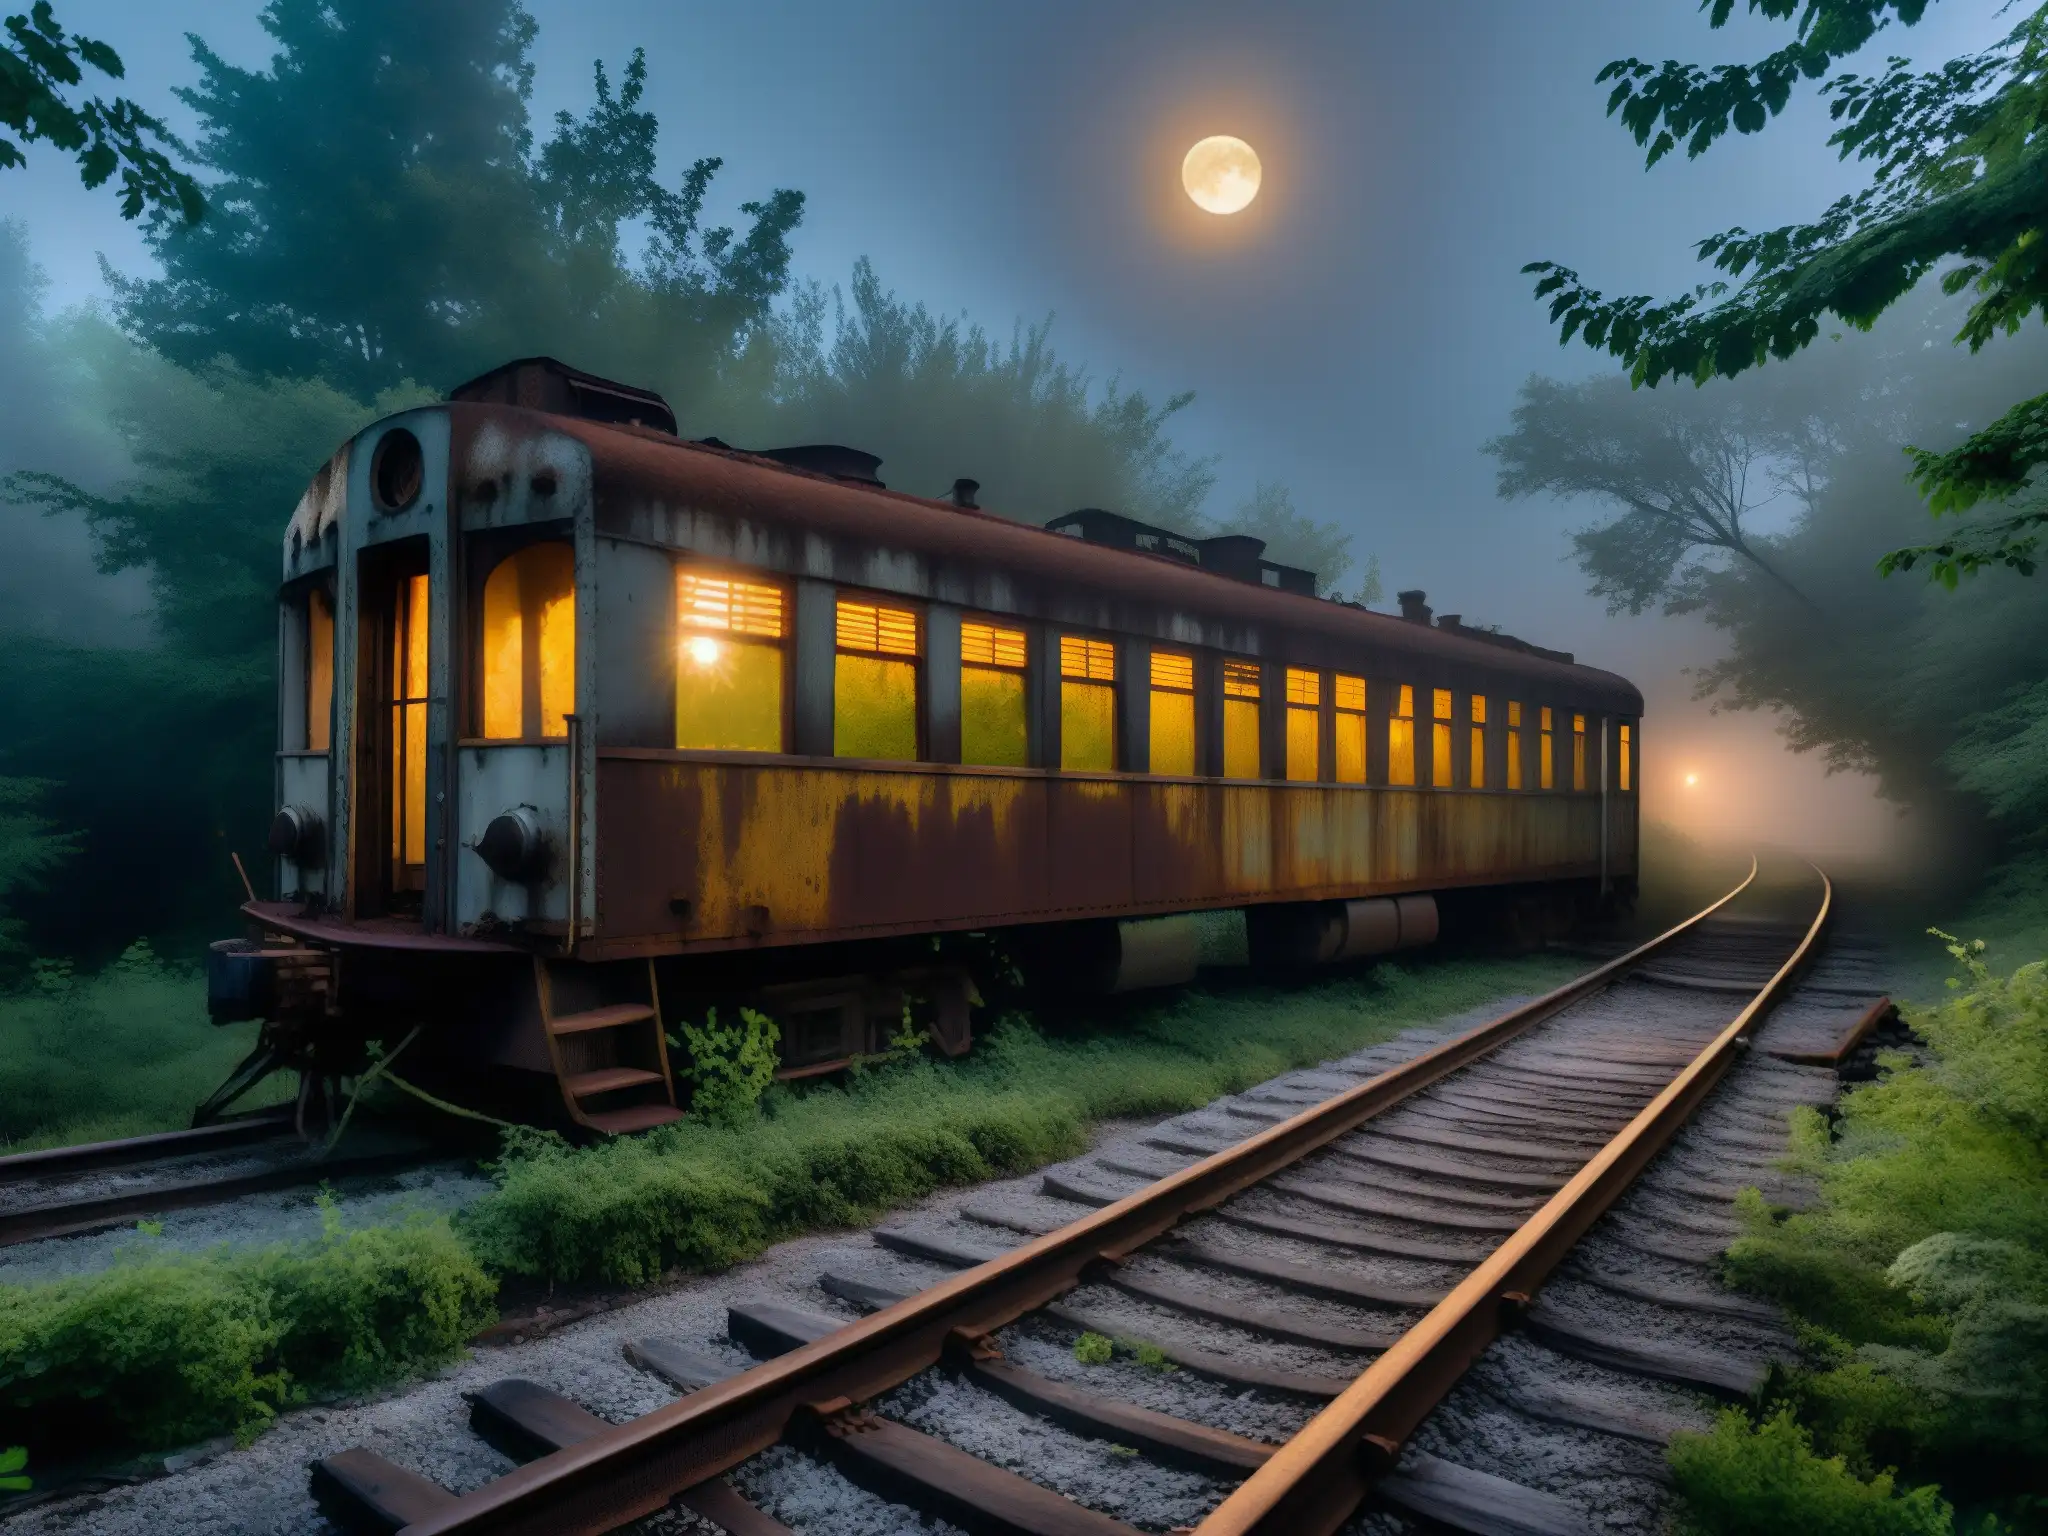 Un tren abandonado con pintura descascarada y ventanas rotas reposa en vías cubiertas de maleza, envuelto en densa niebla